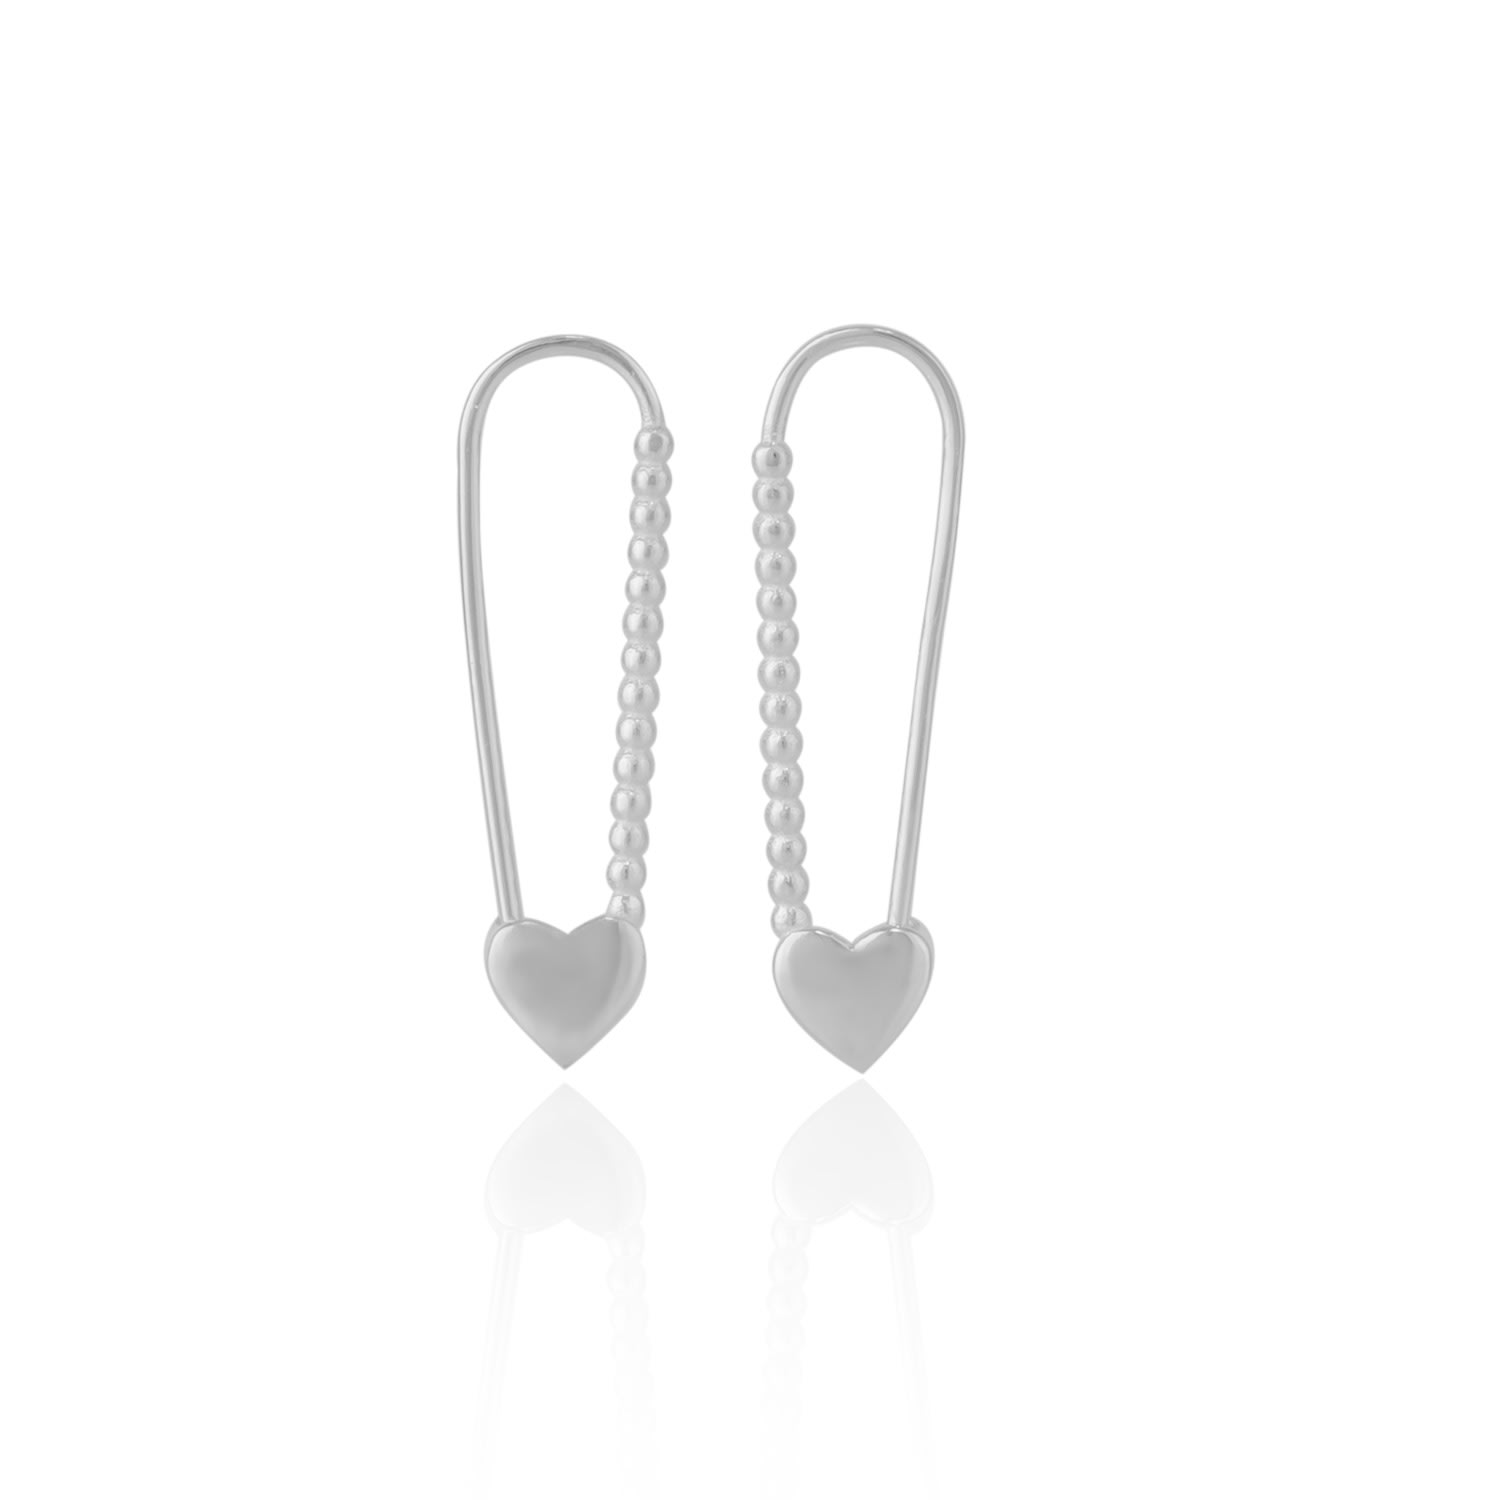 Spero London Women's Heart Beaded Safety Pin Sterling Silver Earring - Silver In Metallic